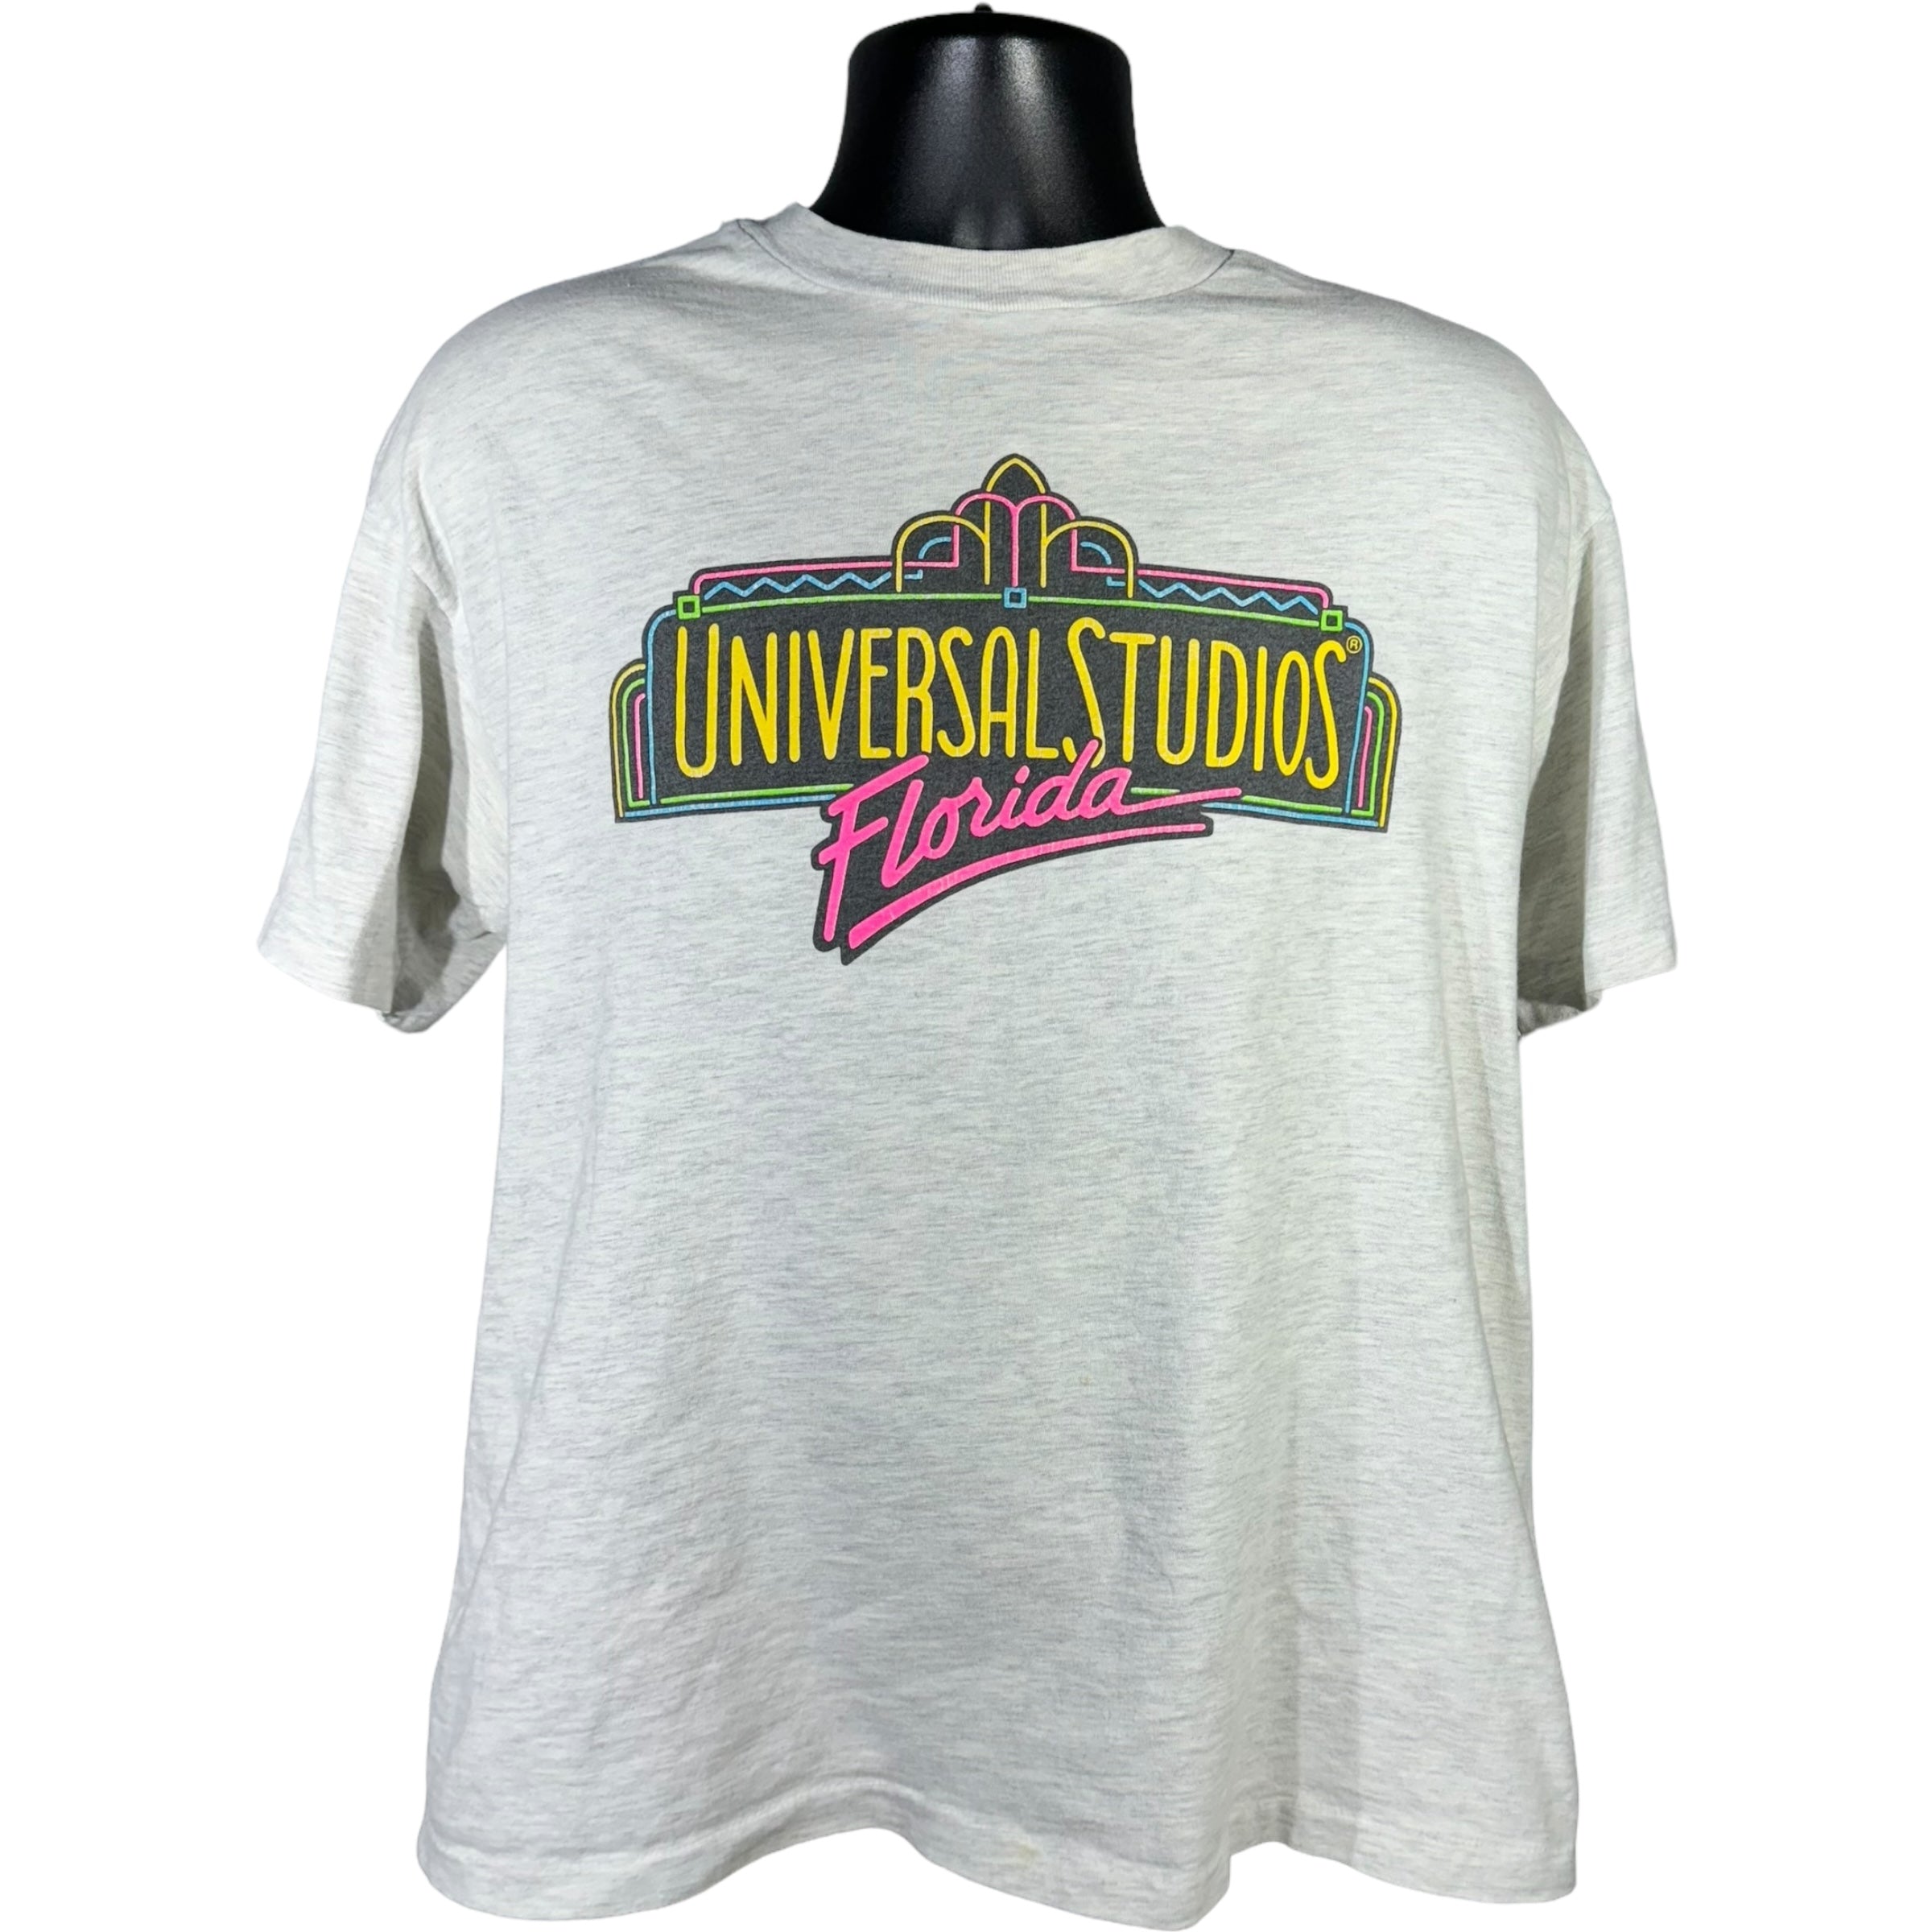 Vintage Universal Studios Florida Tee